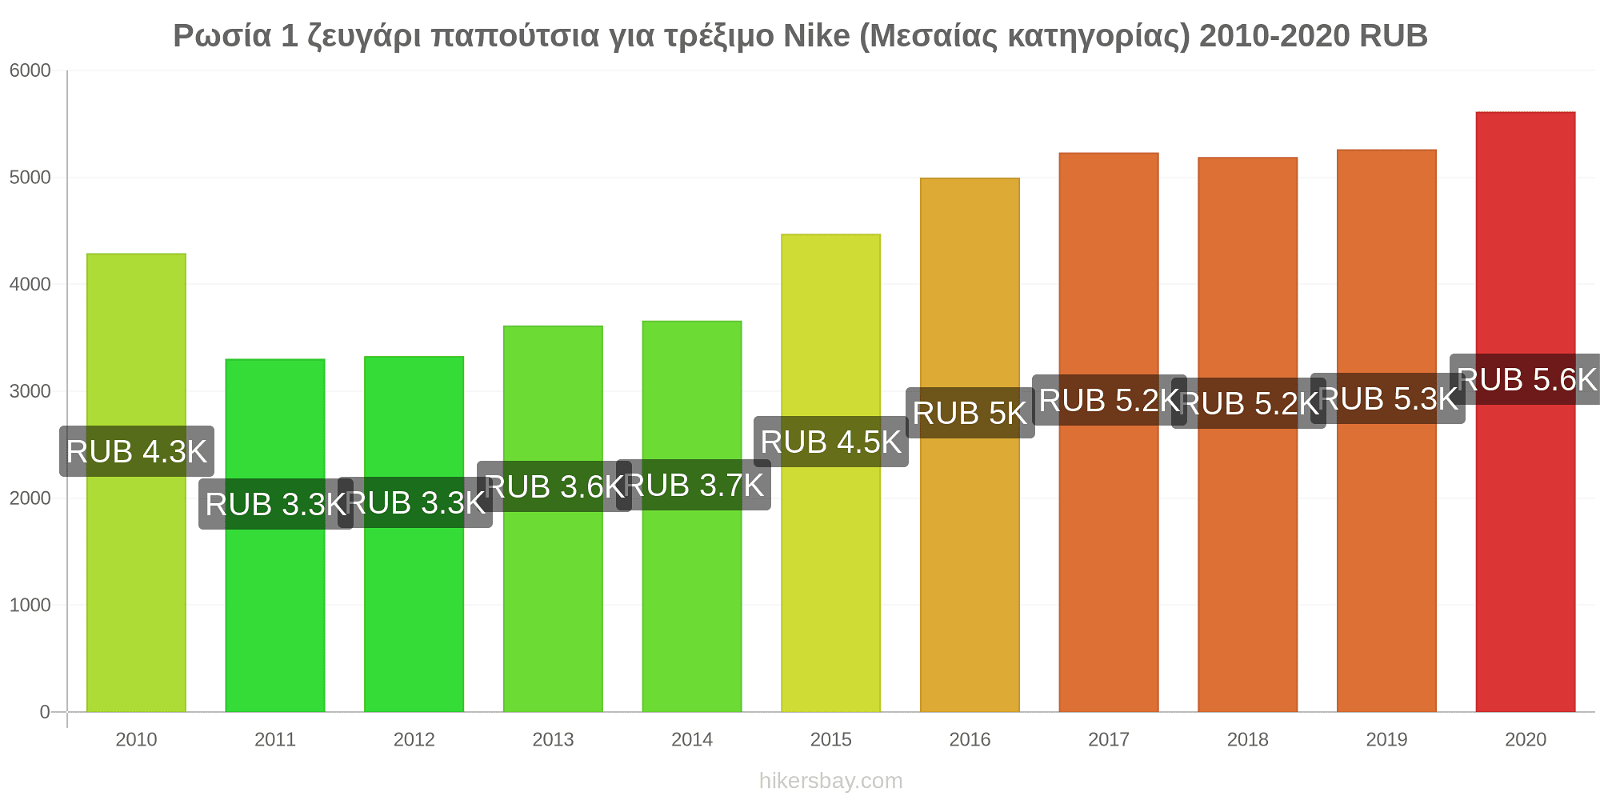 Ρωσία αλλαγές τιμών 1 ζευγάρι παπούτσια για τρέξιμο Nike (Μεσαίας κατηγορίας) hikersbay.com